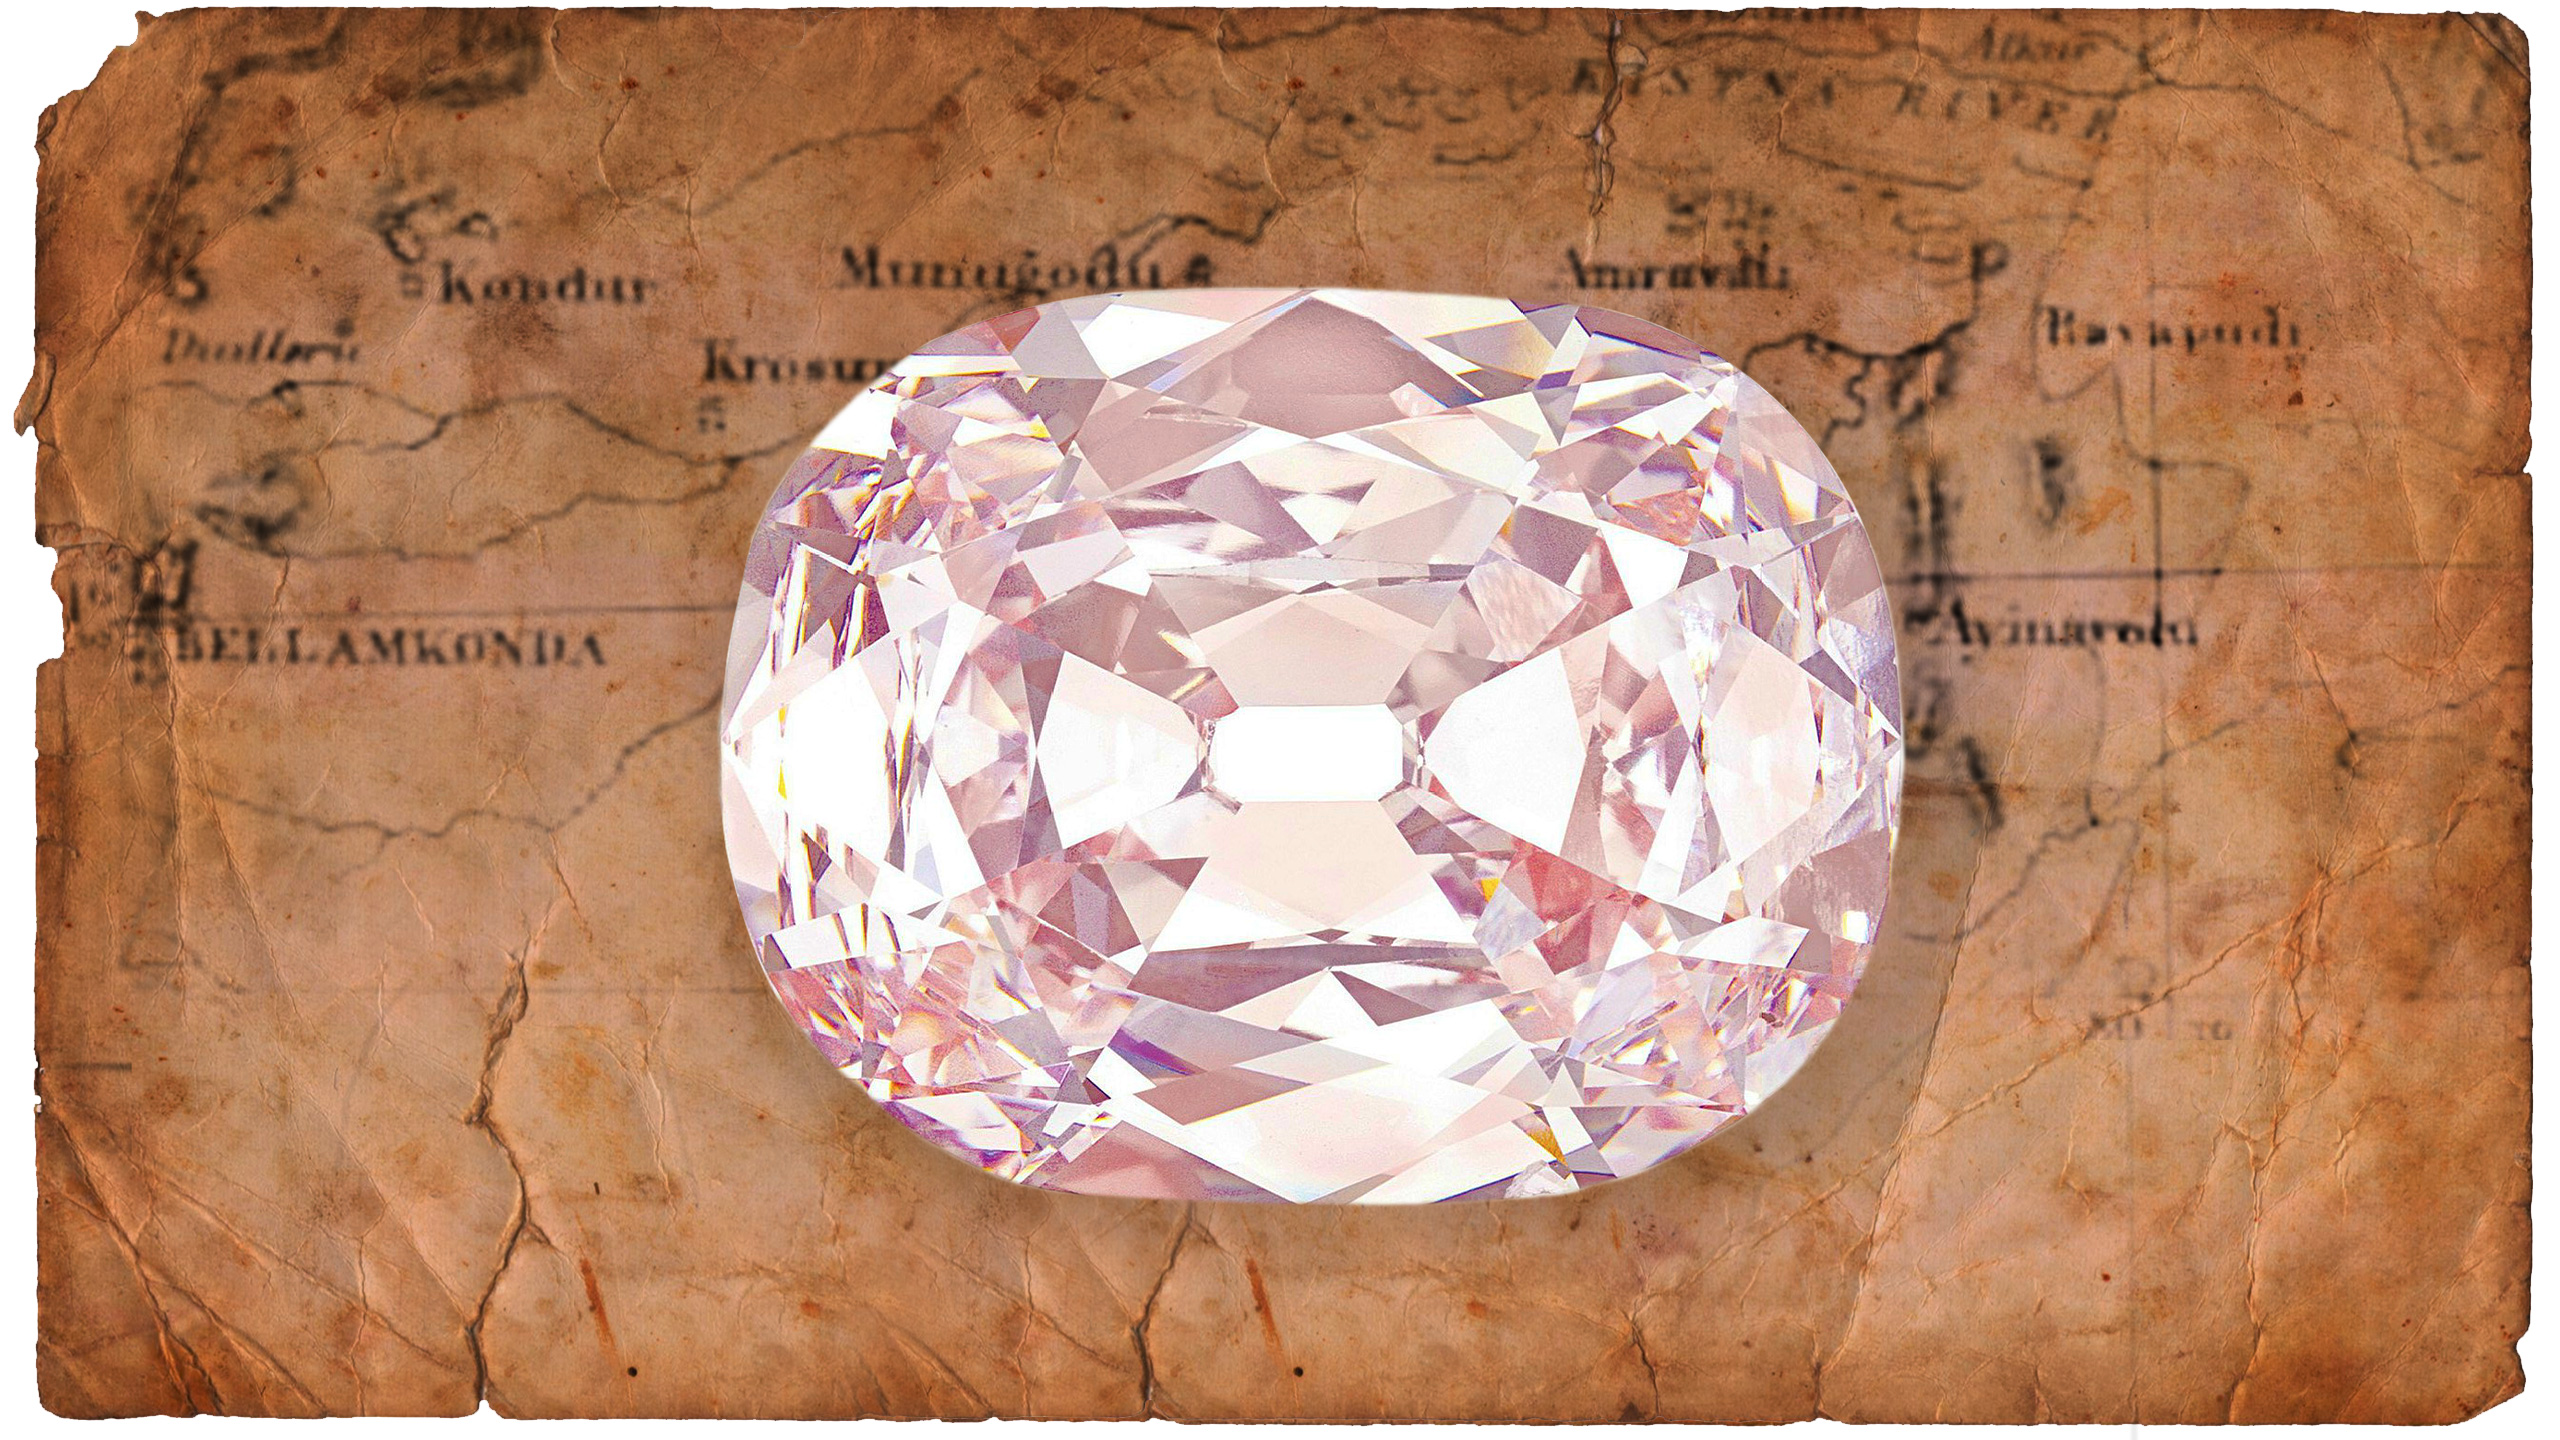 The 34 Carat Natural Pink Diamond